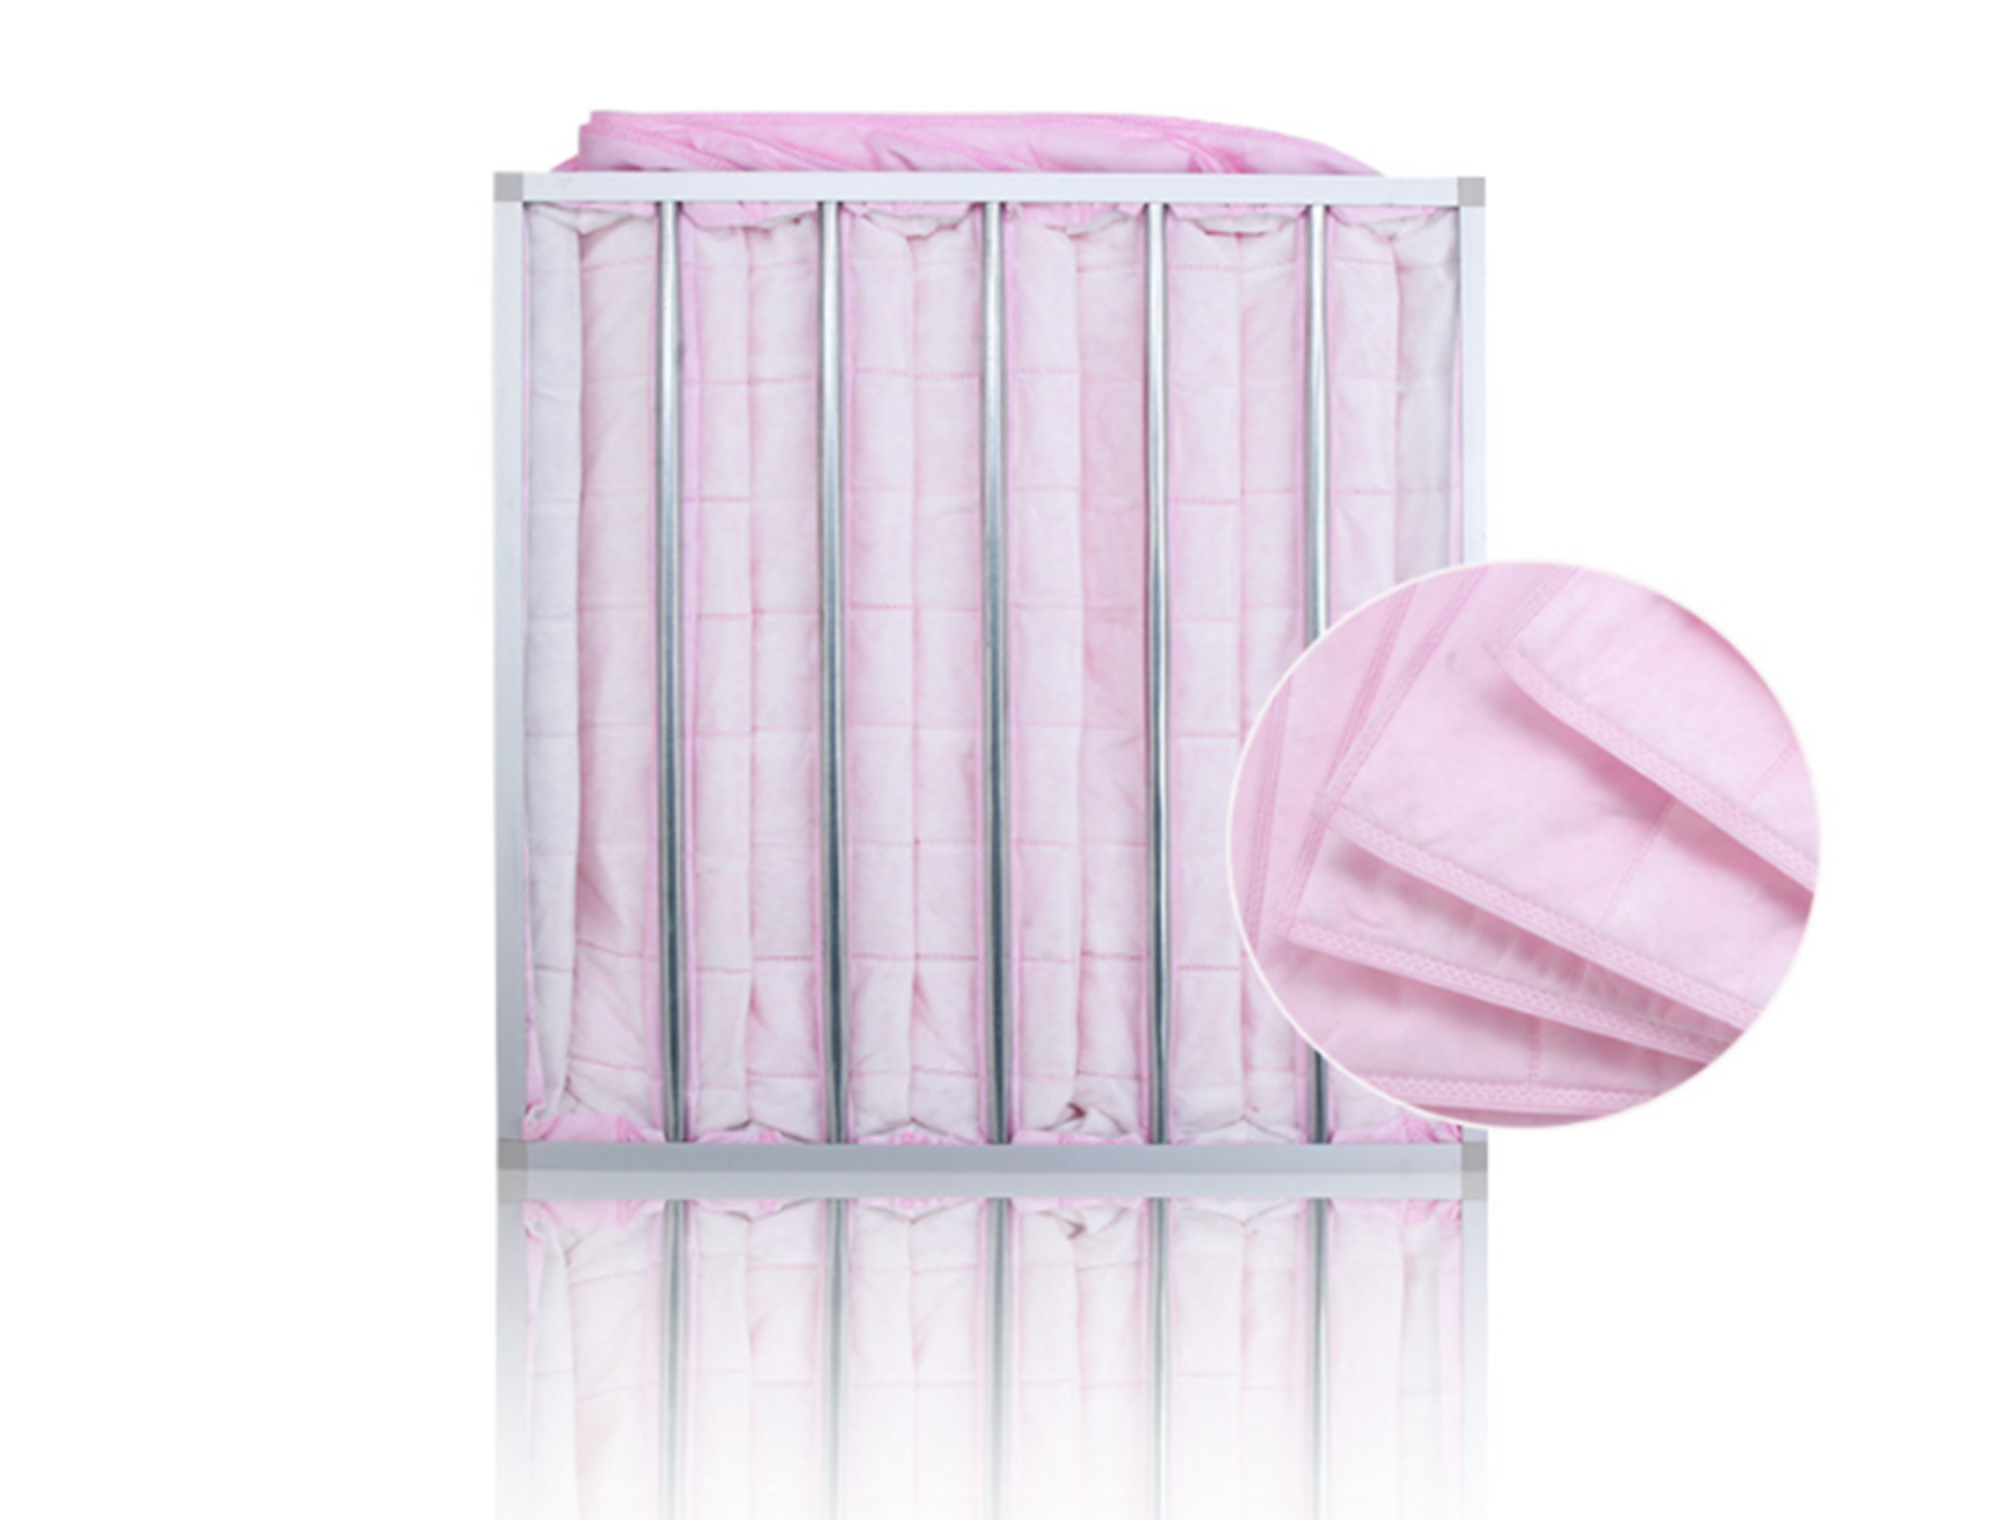 F7 Medium Efficiency Pocket Filter Bag Filter Pink Glass Fiber Bag Filter